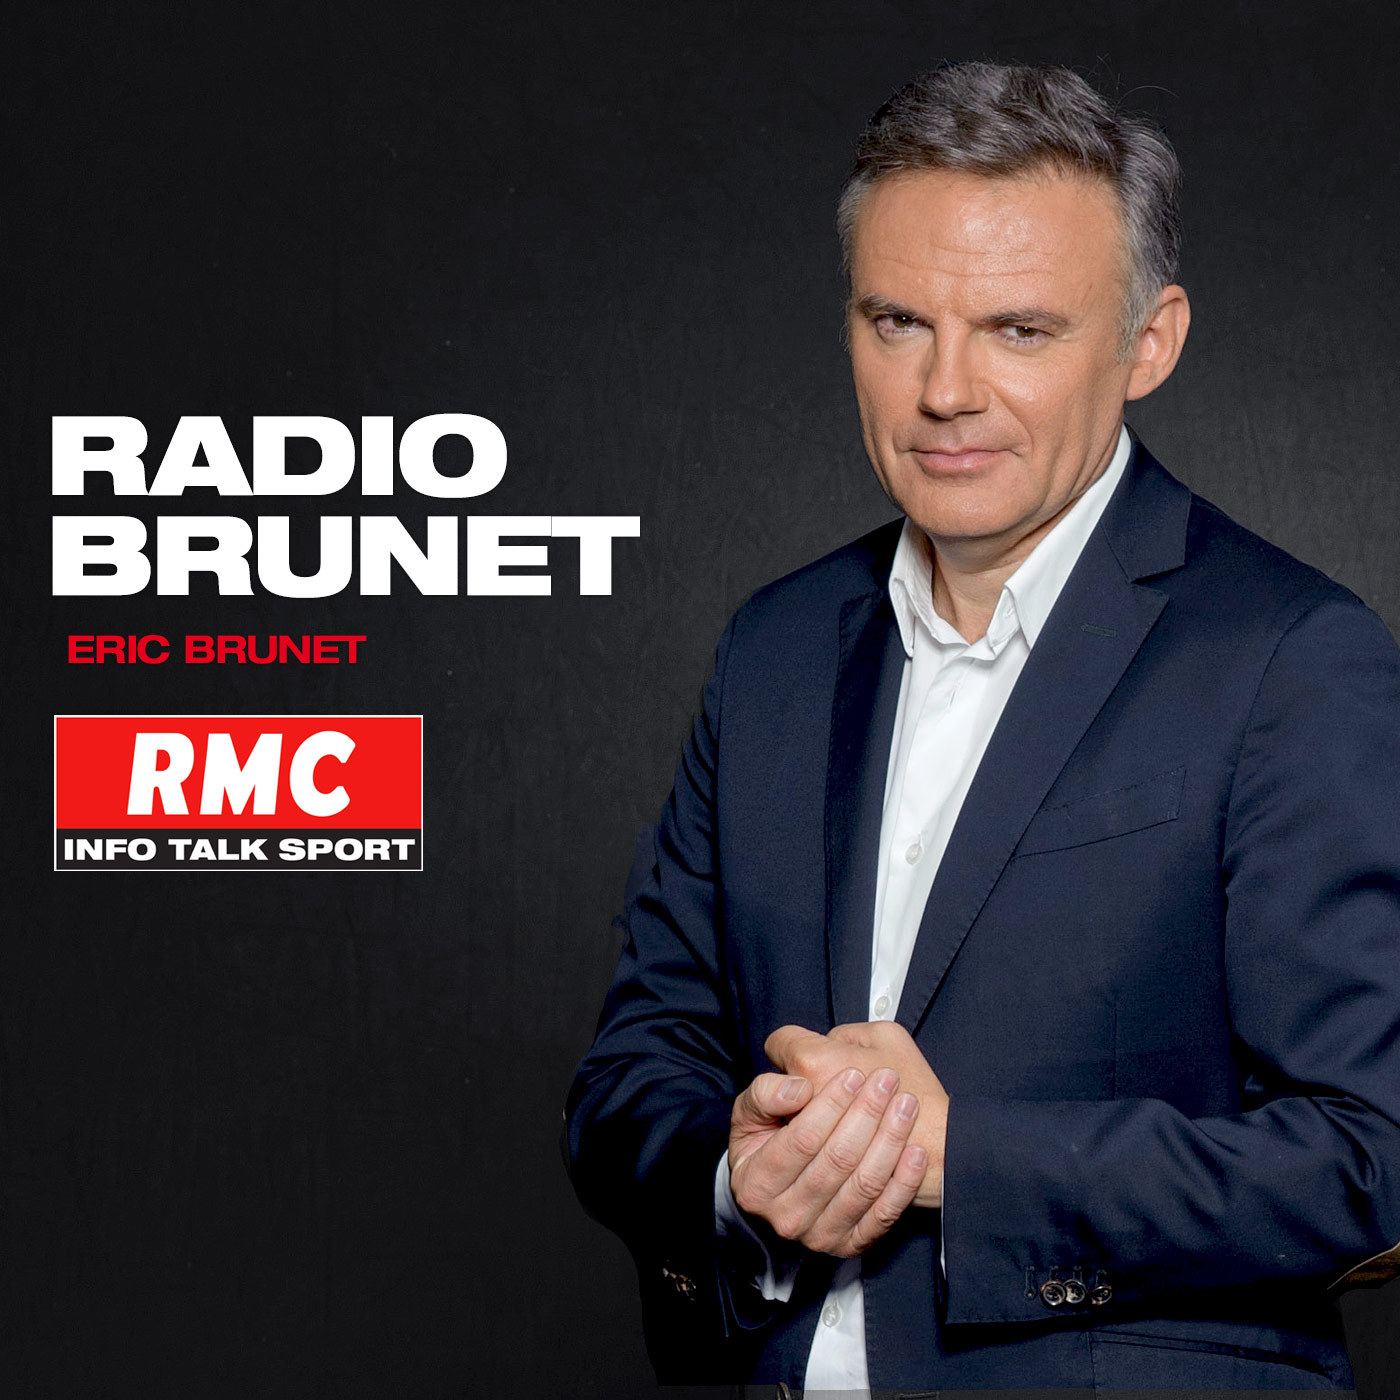 RMC-radio-brunet